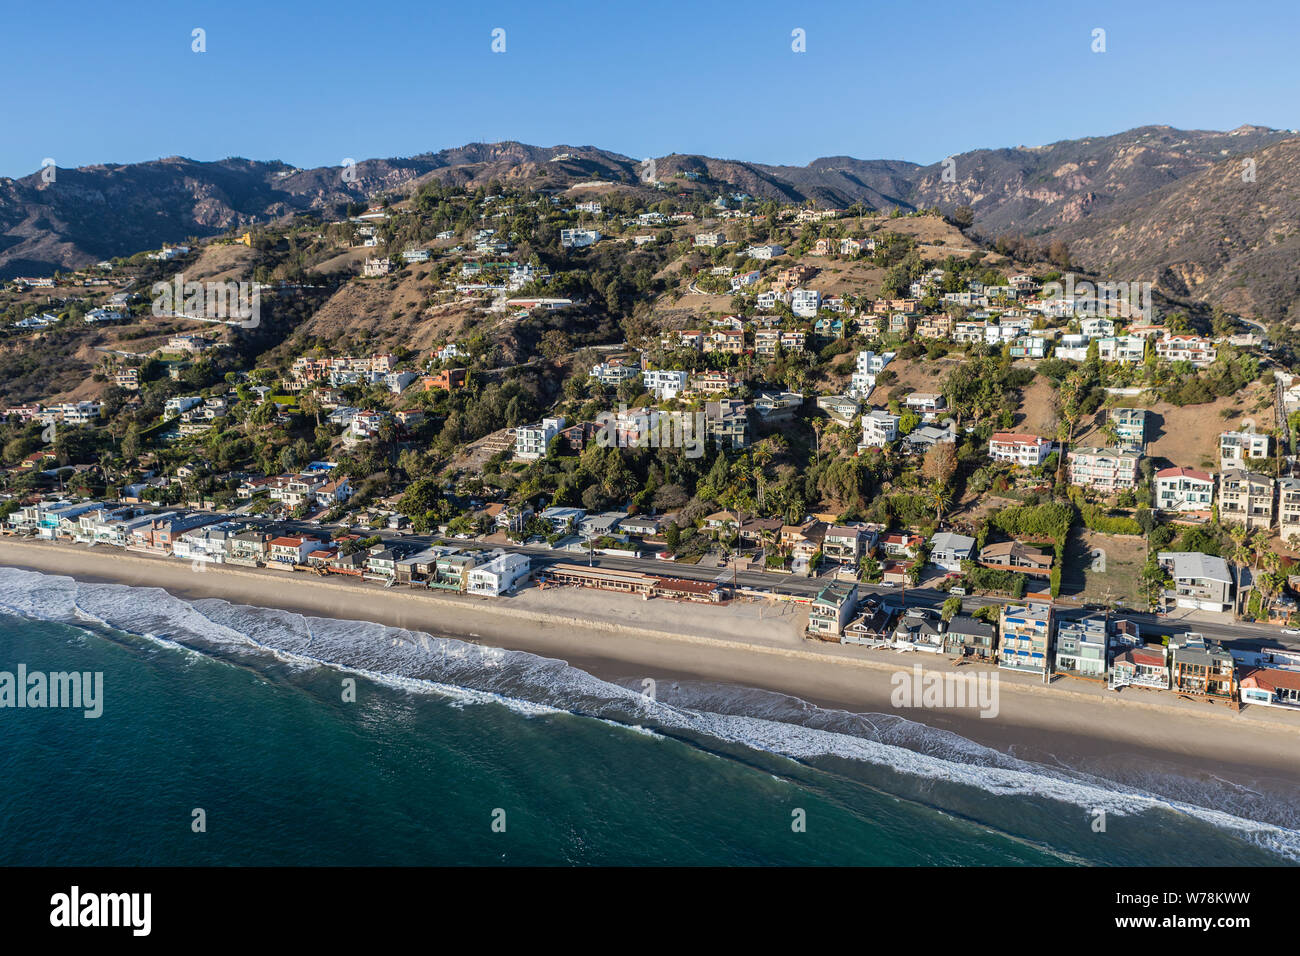 Vue aérienne de la maison et du bâtiment, du littoral au nord de Los Angeles sur la pittoresque route côtière du Pacifique à Malibu, en Californie. Banque D'Images